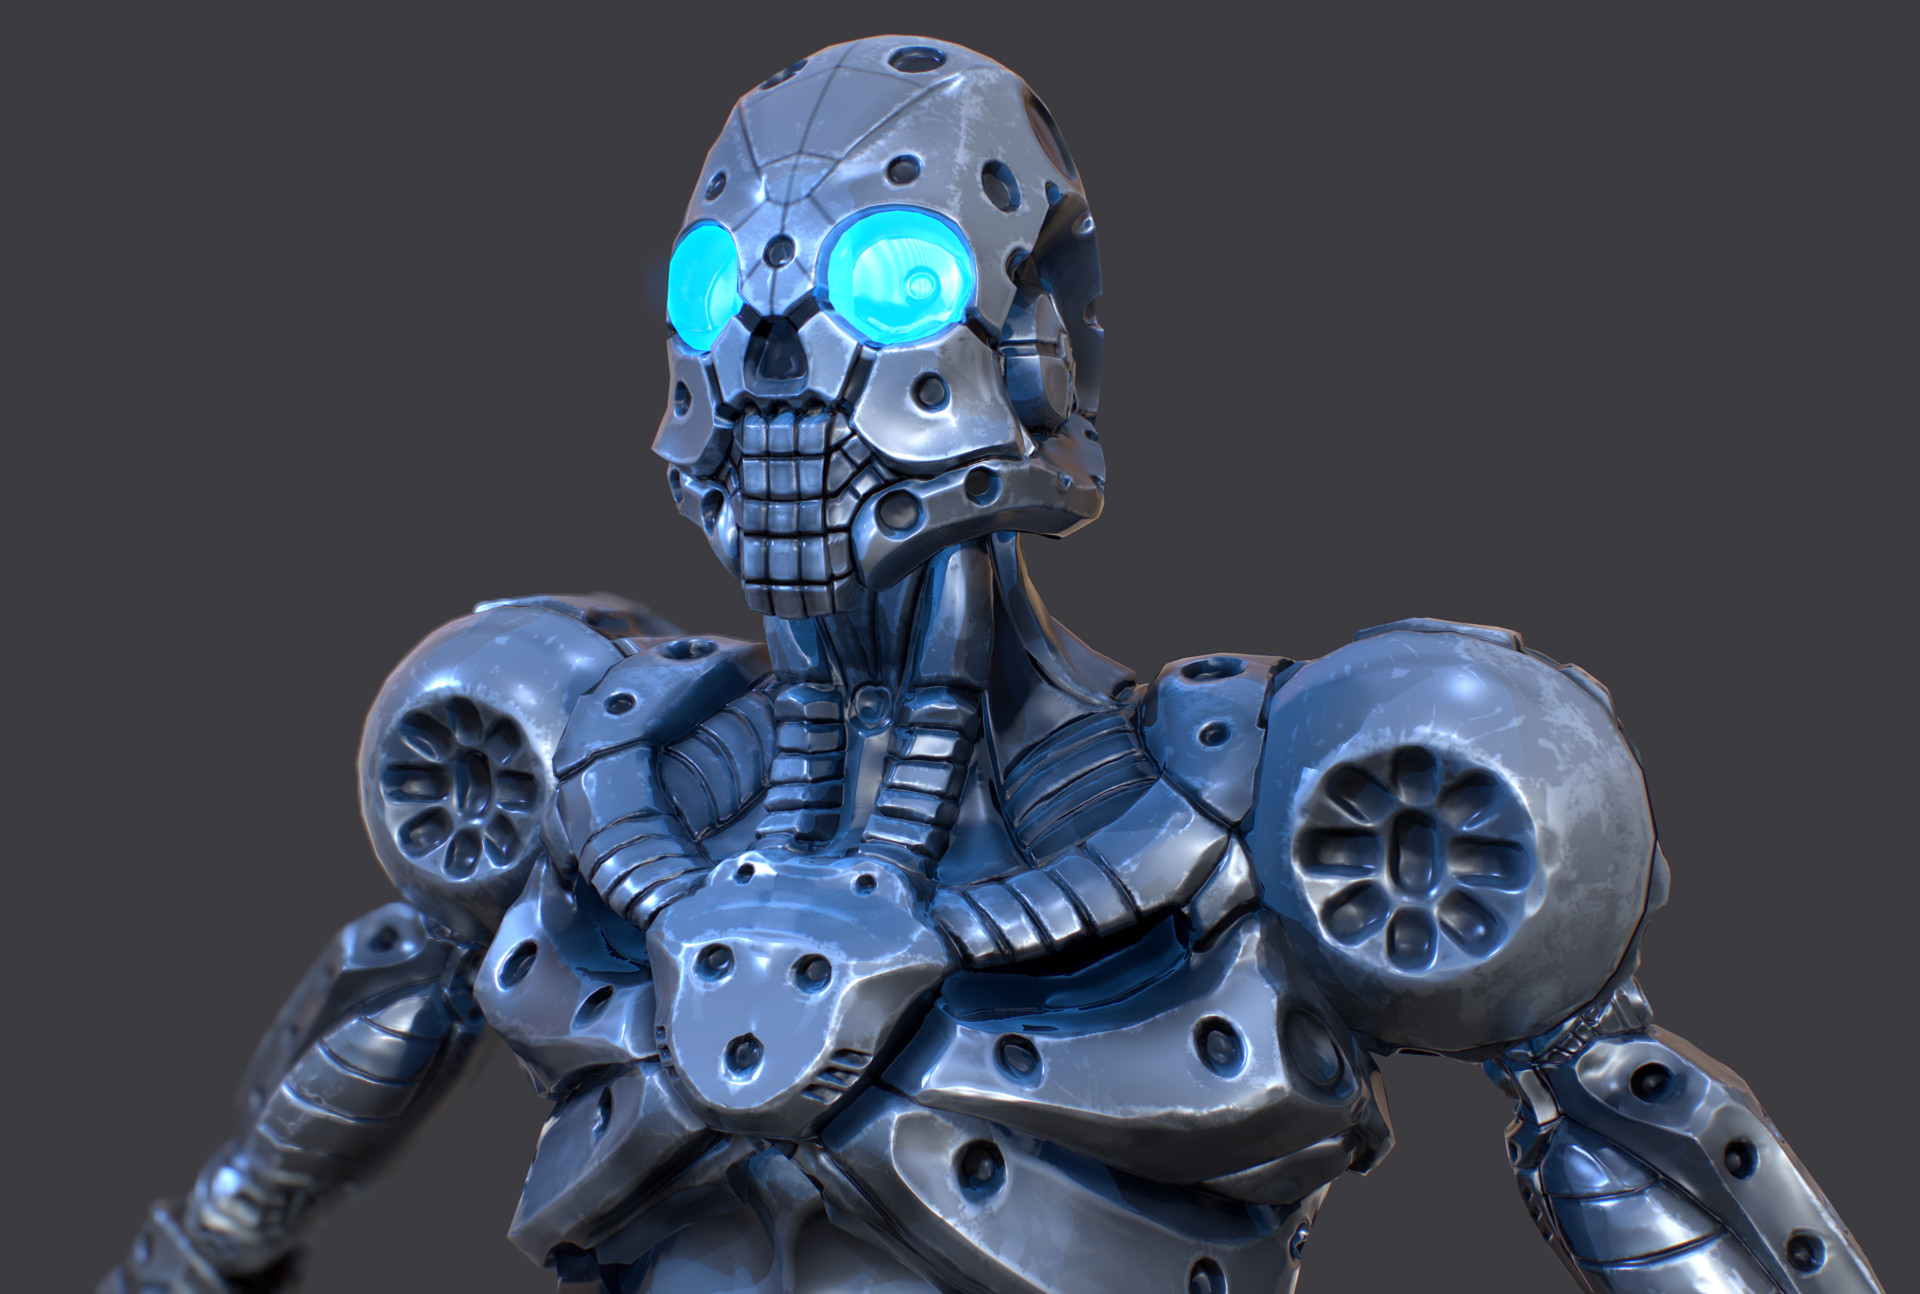 skeleton robot toy